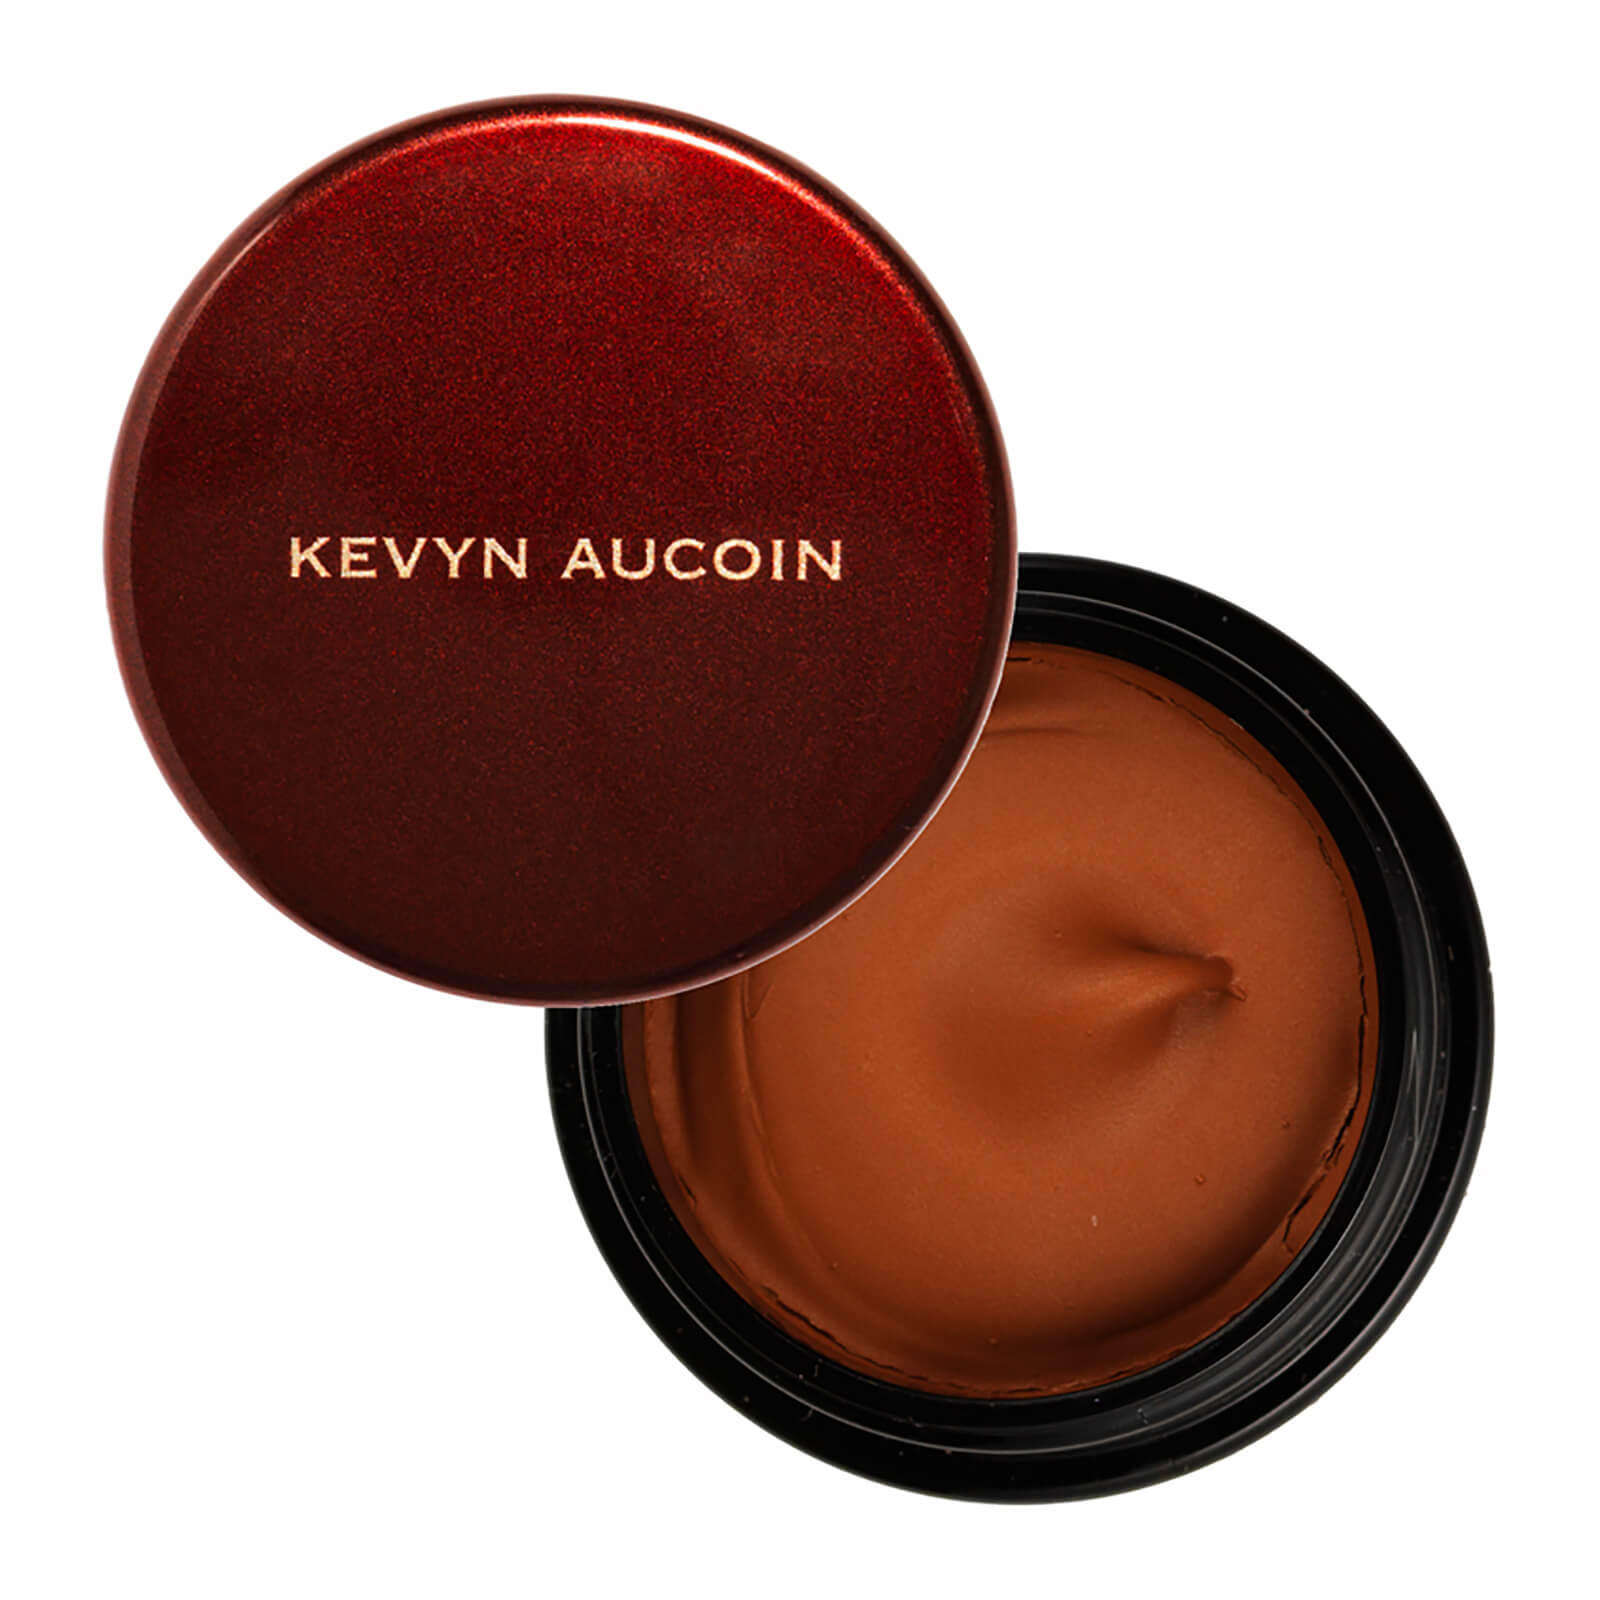 Kevyn Aucoin The Sensual Skin Enhancer (Various Shades) - SX 14